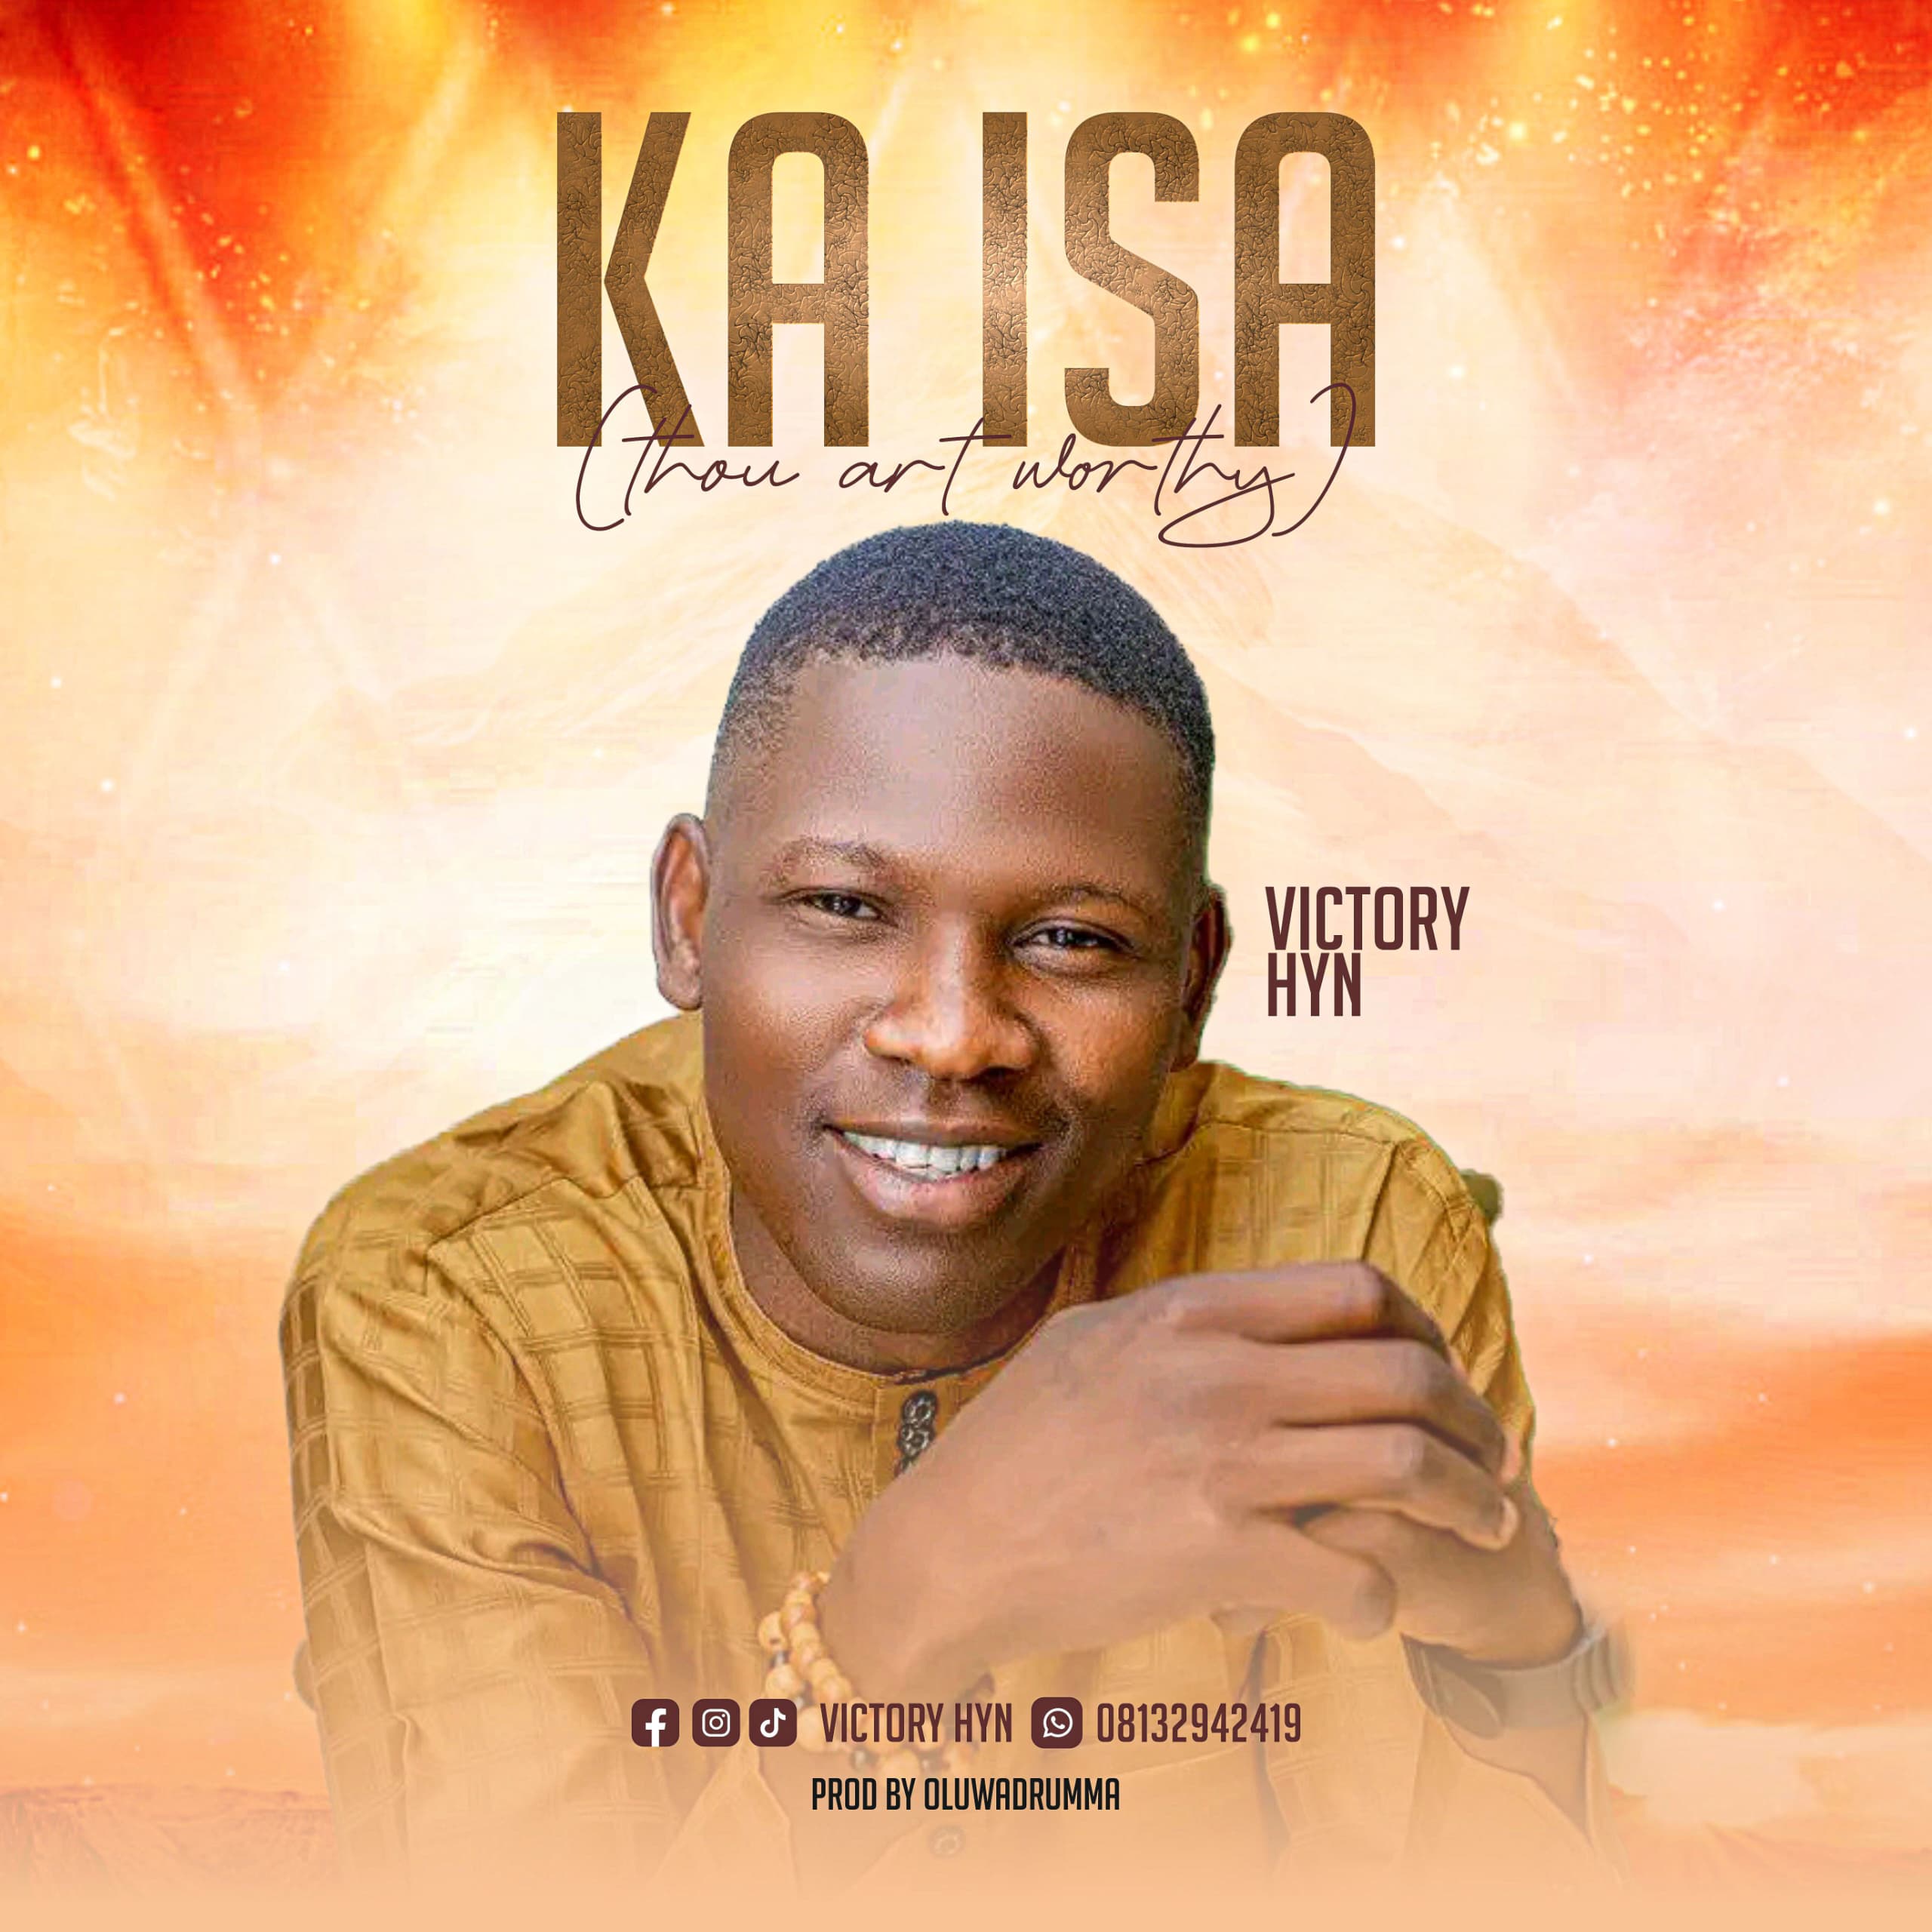 Ka Isa (Thou art worthy) – Victory Hyn